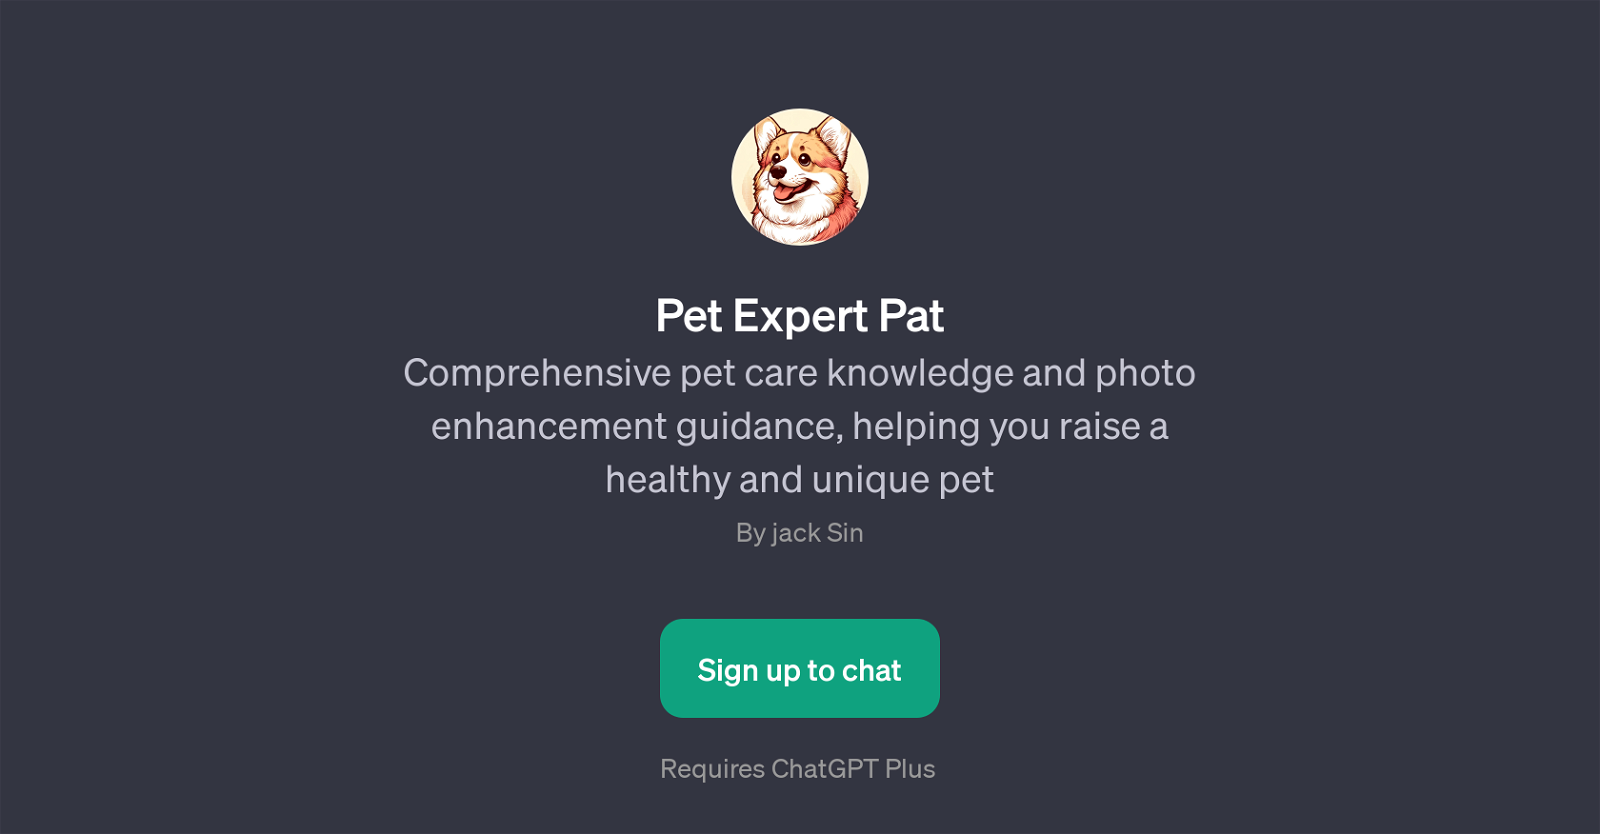 Pet Expert Pat website